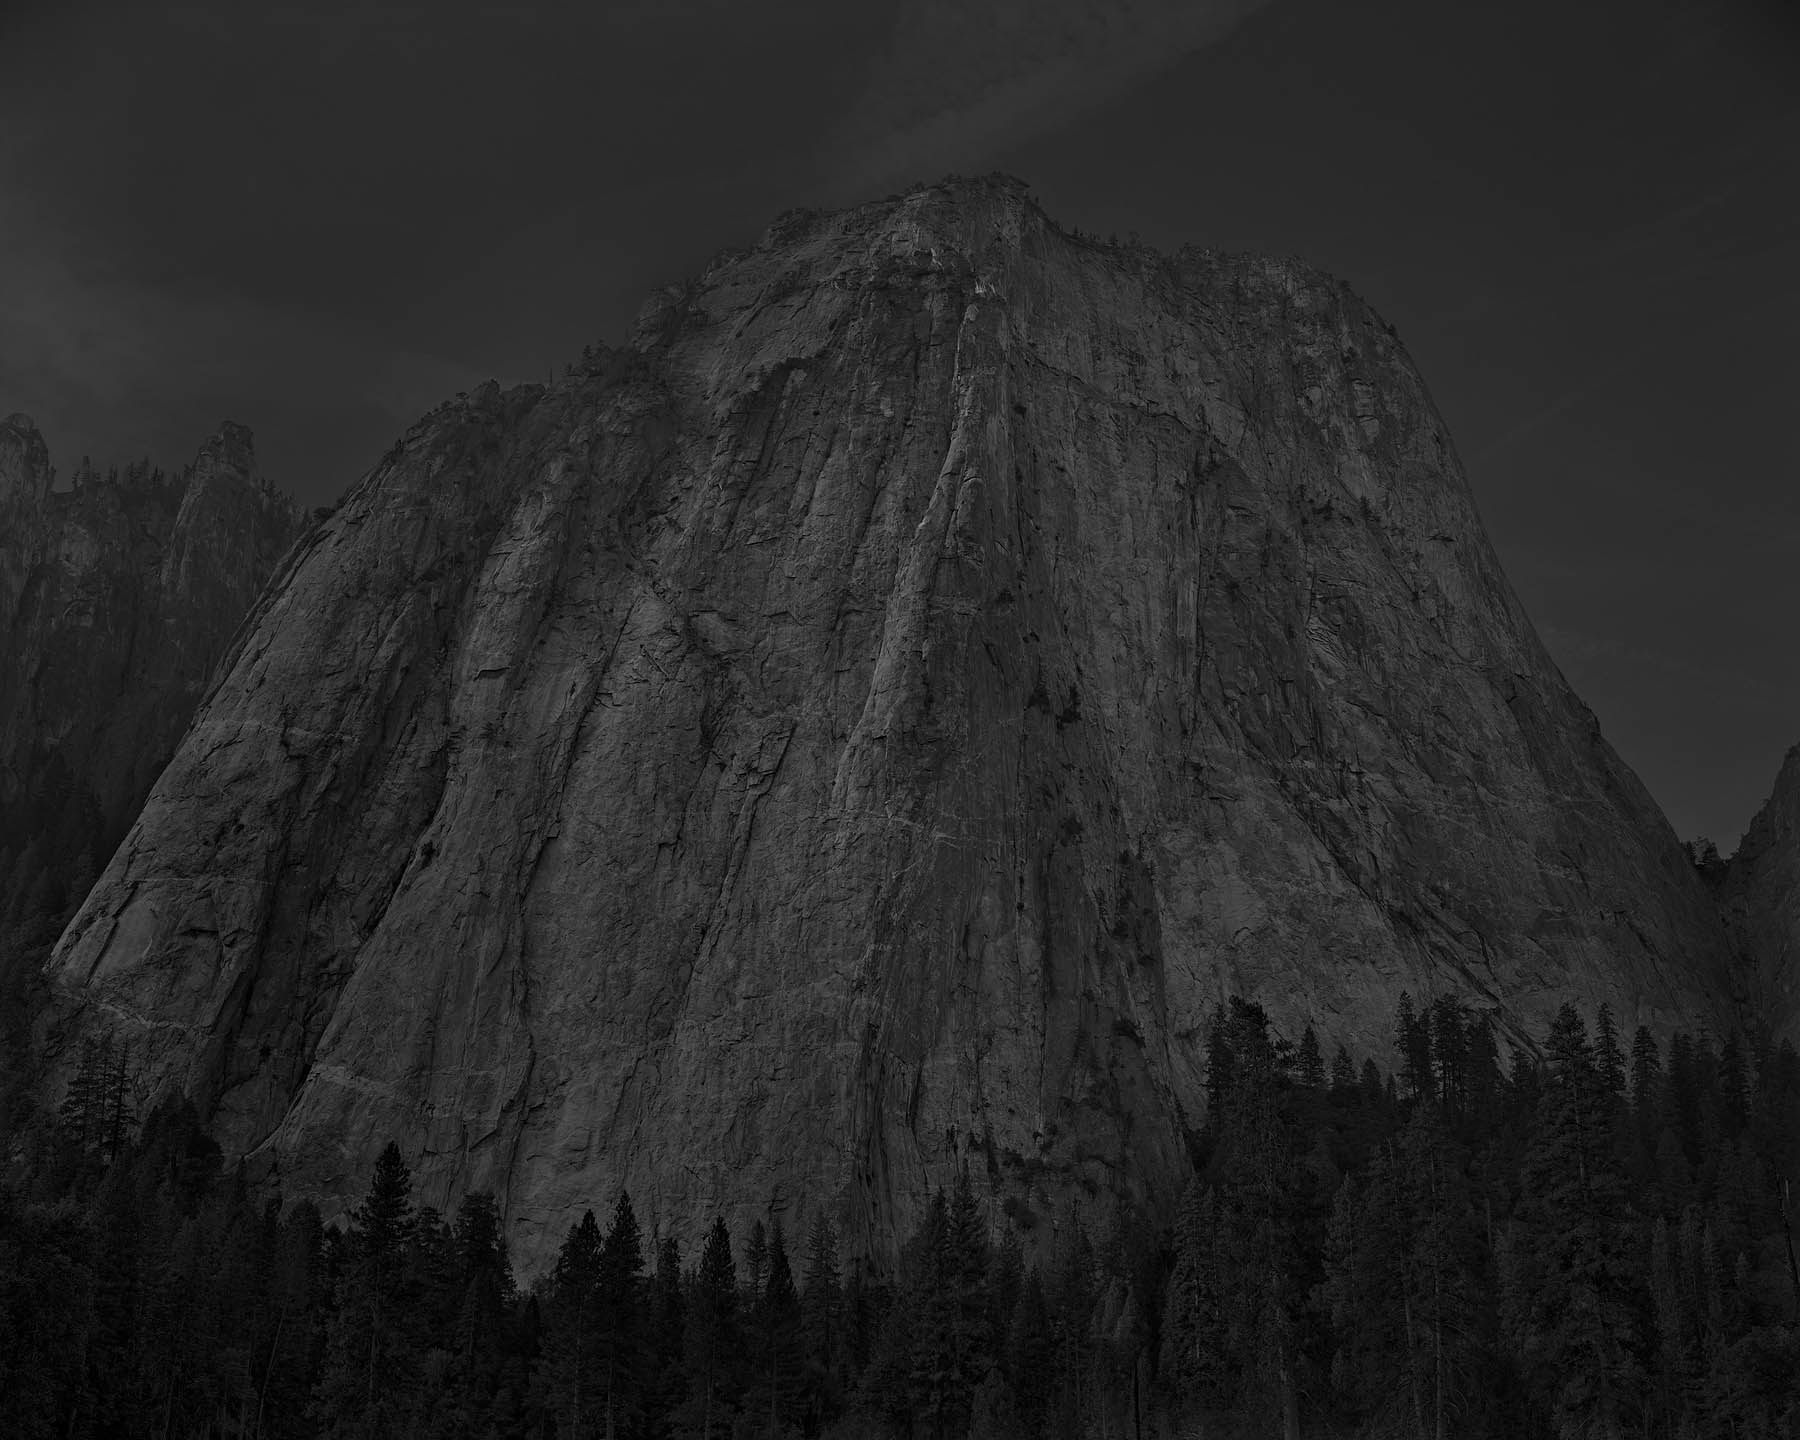 Cathedral Rock Yosemite 2012 - Photo by Adam Katseff